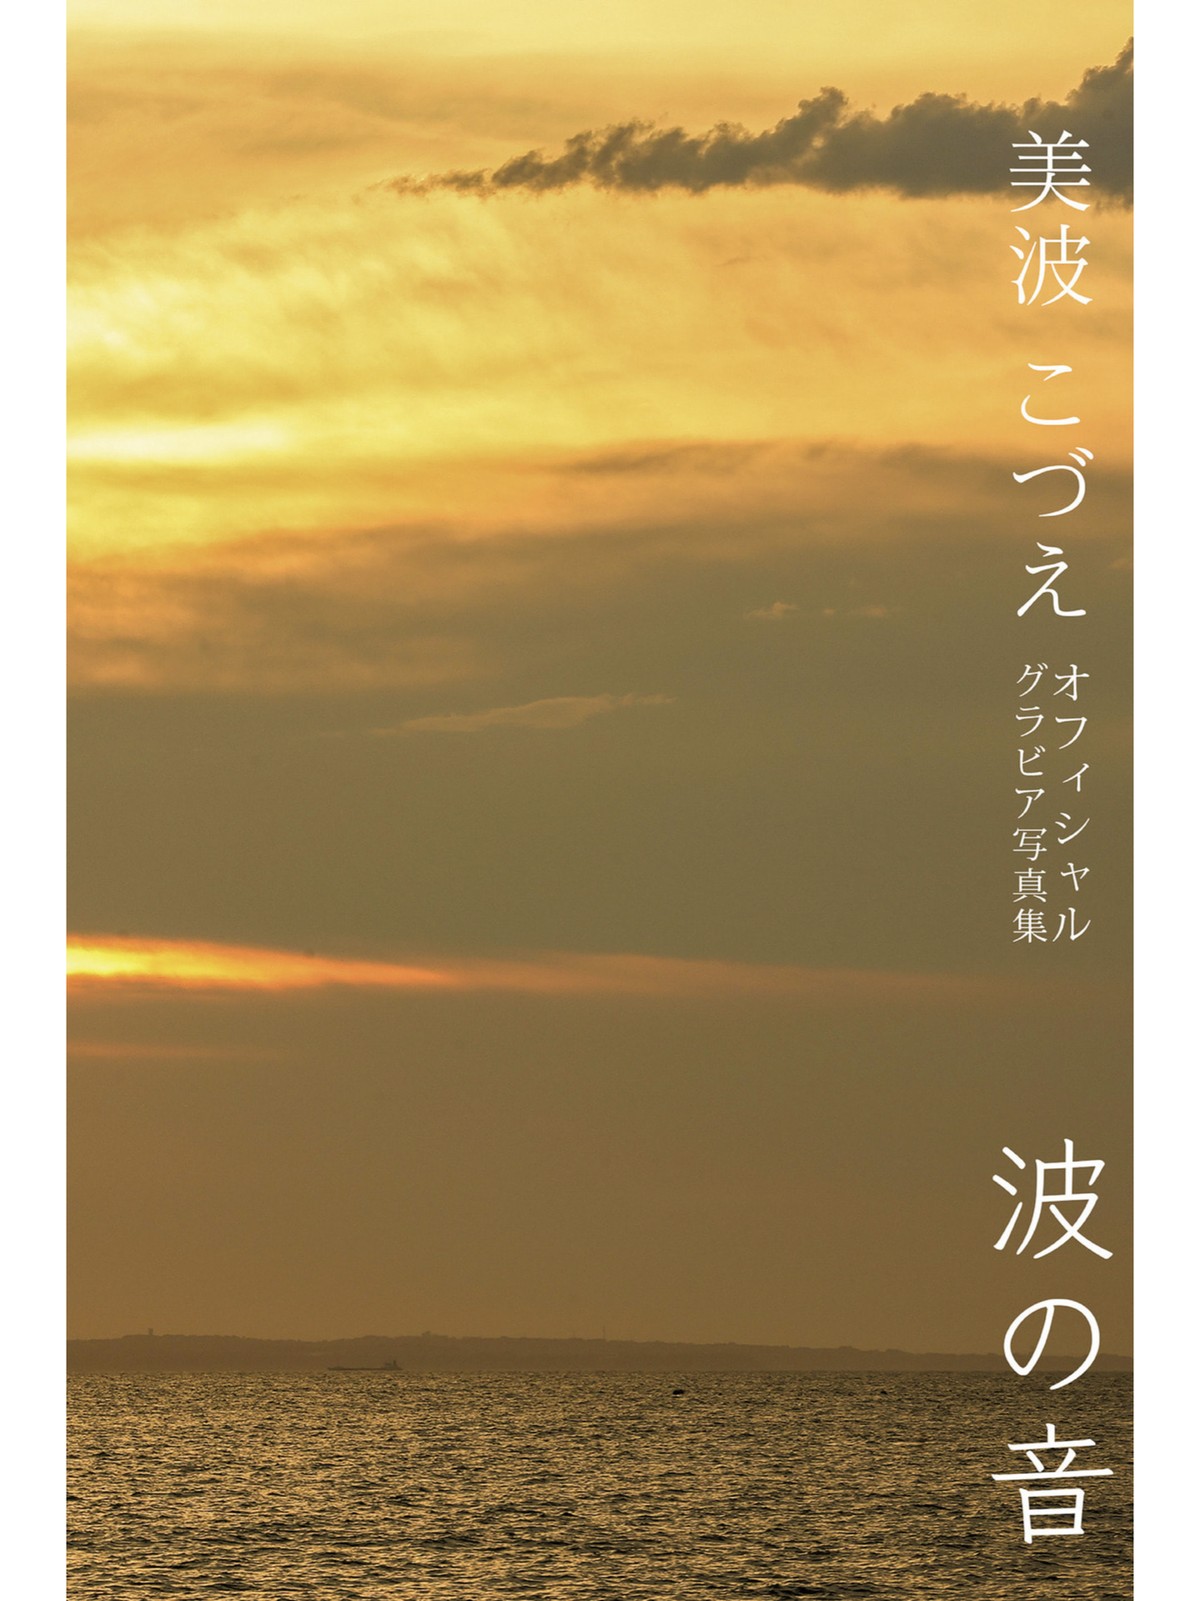 Photobook 2022 09 09 Kozue Minami 美波こづえ Sound Of Waves 0053 7111050341.jpg